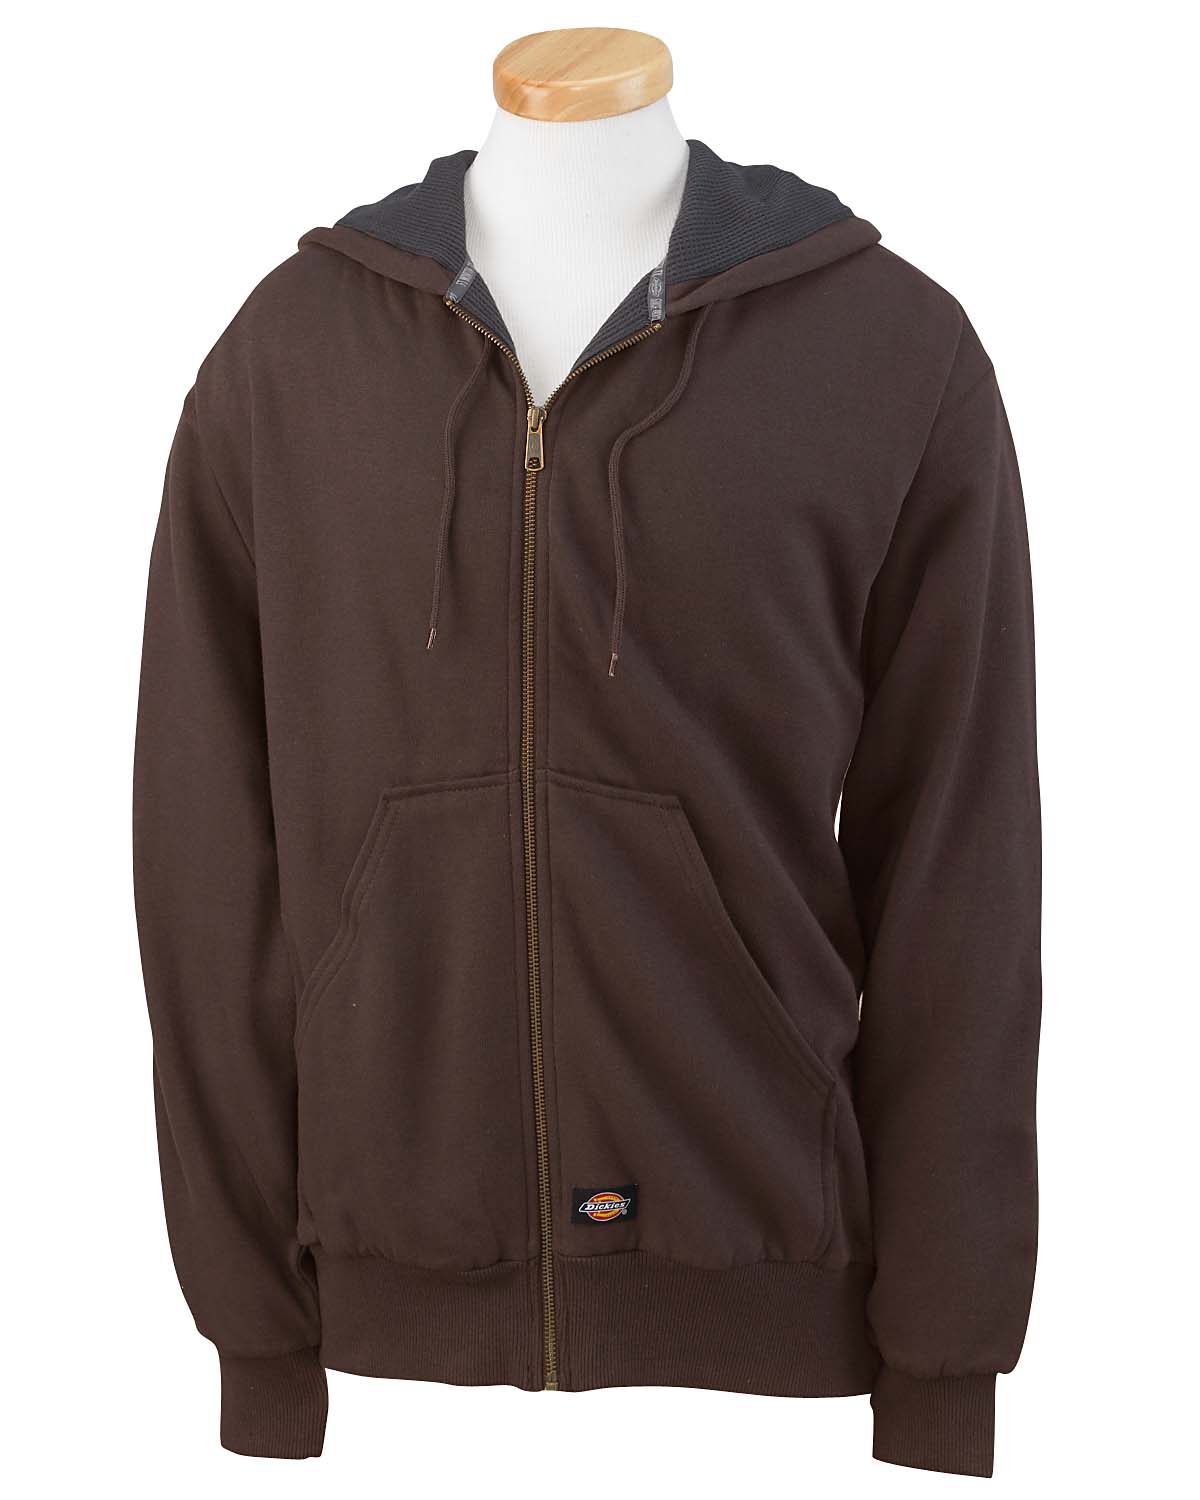 Buy Mens 470 Gram Thermal-Lined Fleece Jacket Hooded Sweatshirt ...